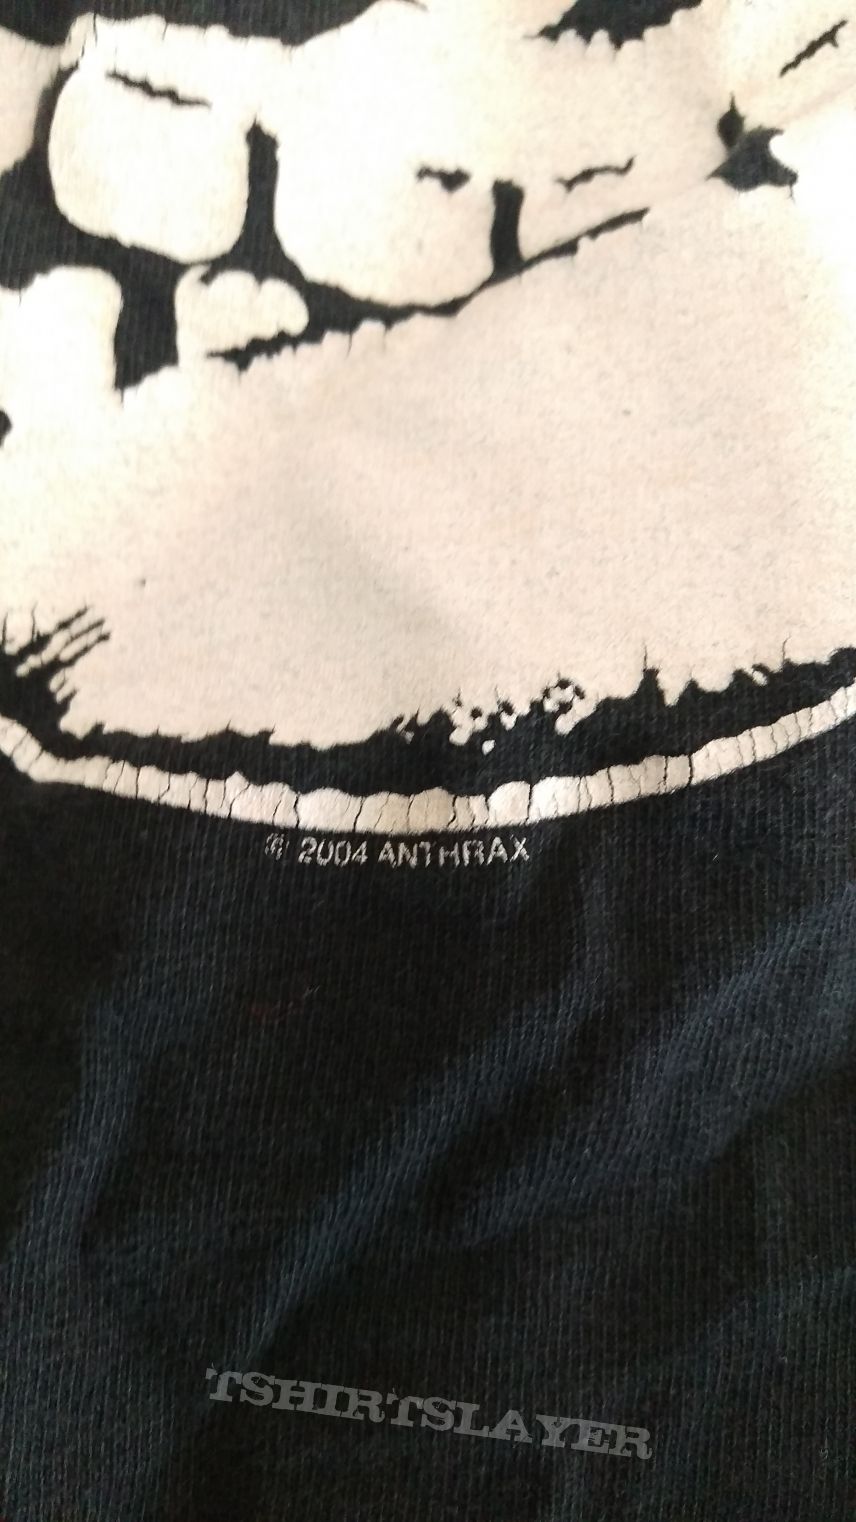 Anthrax shirt